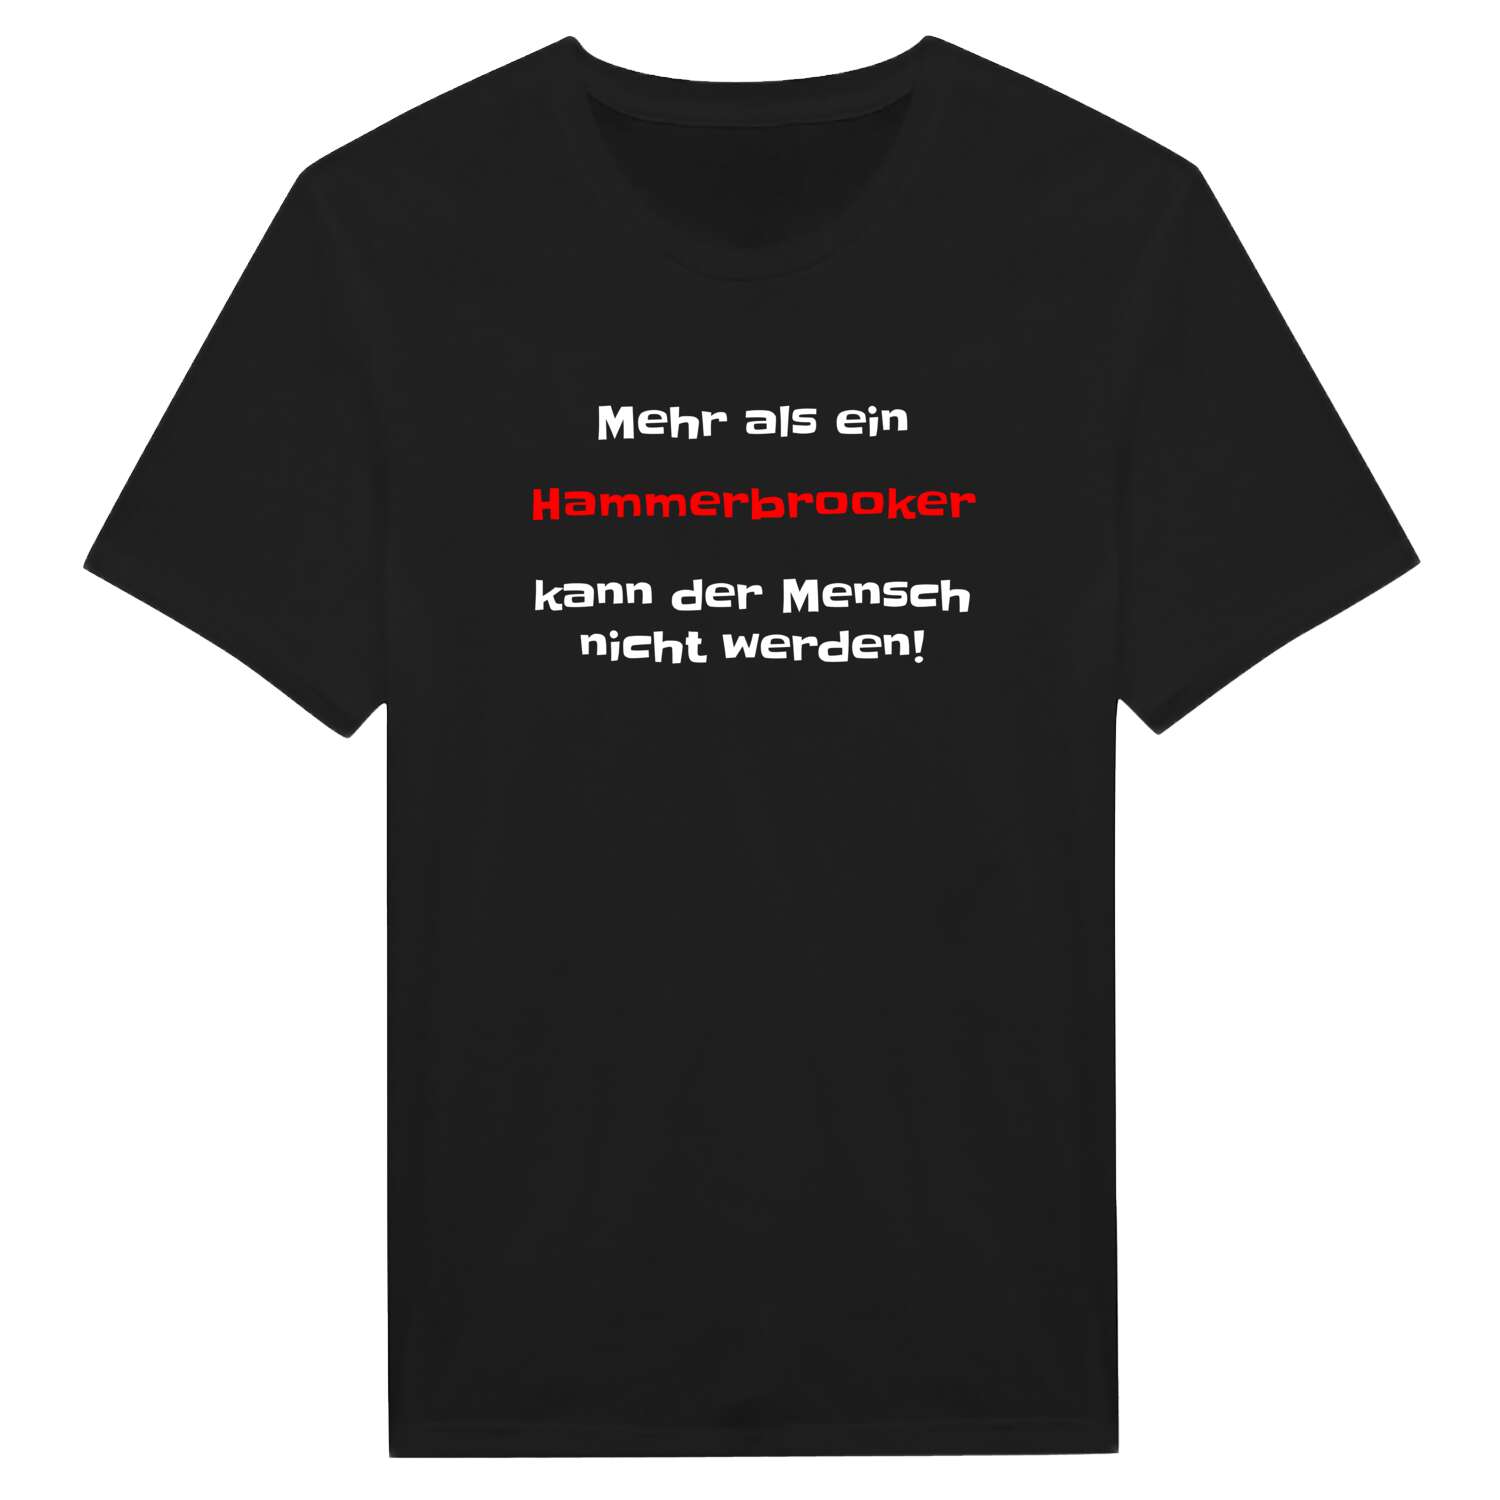 Hammerbrook T-Shirt »Mehr als ein«